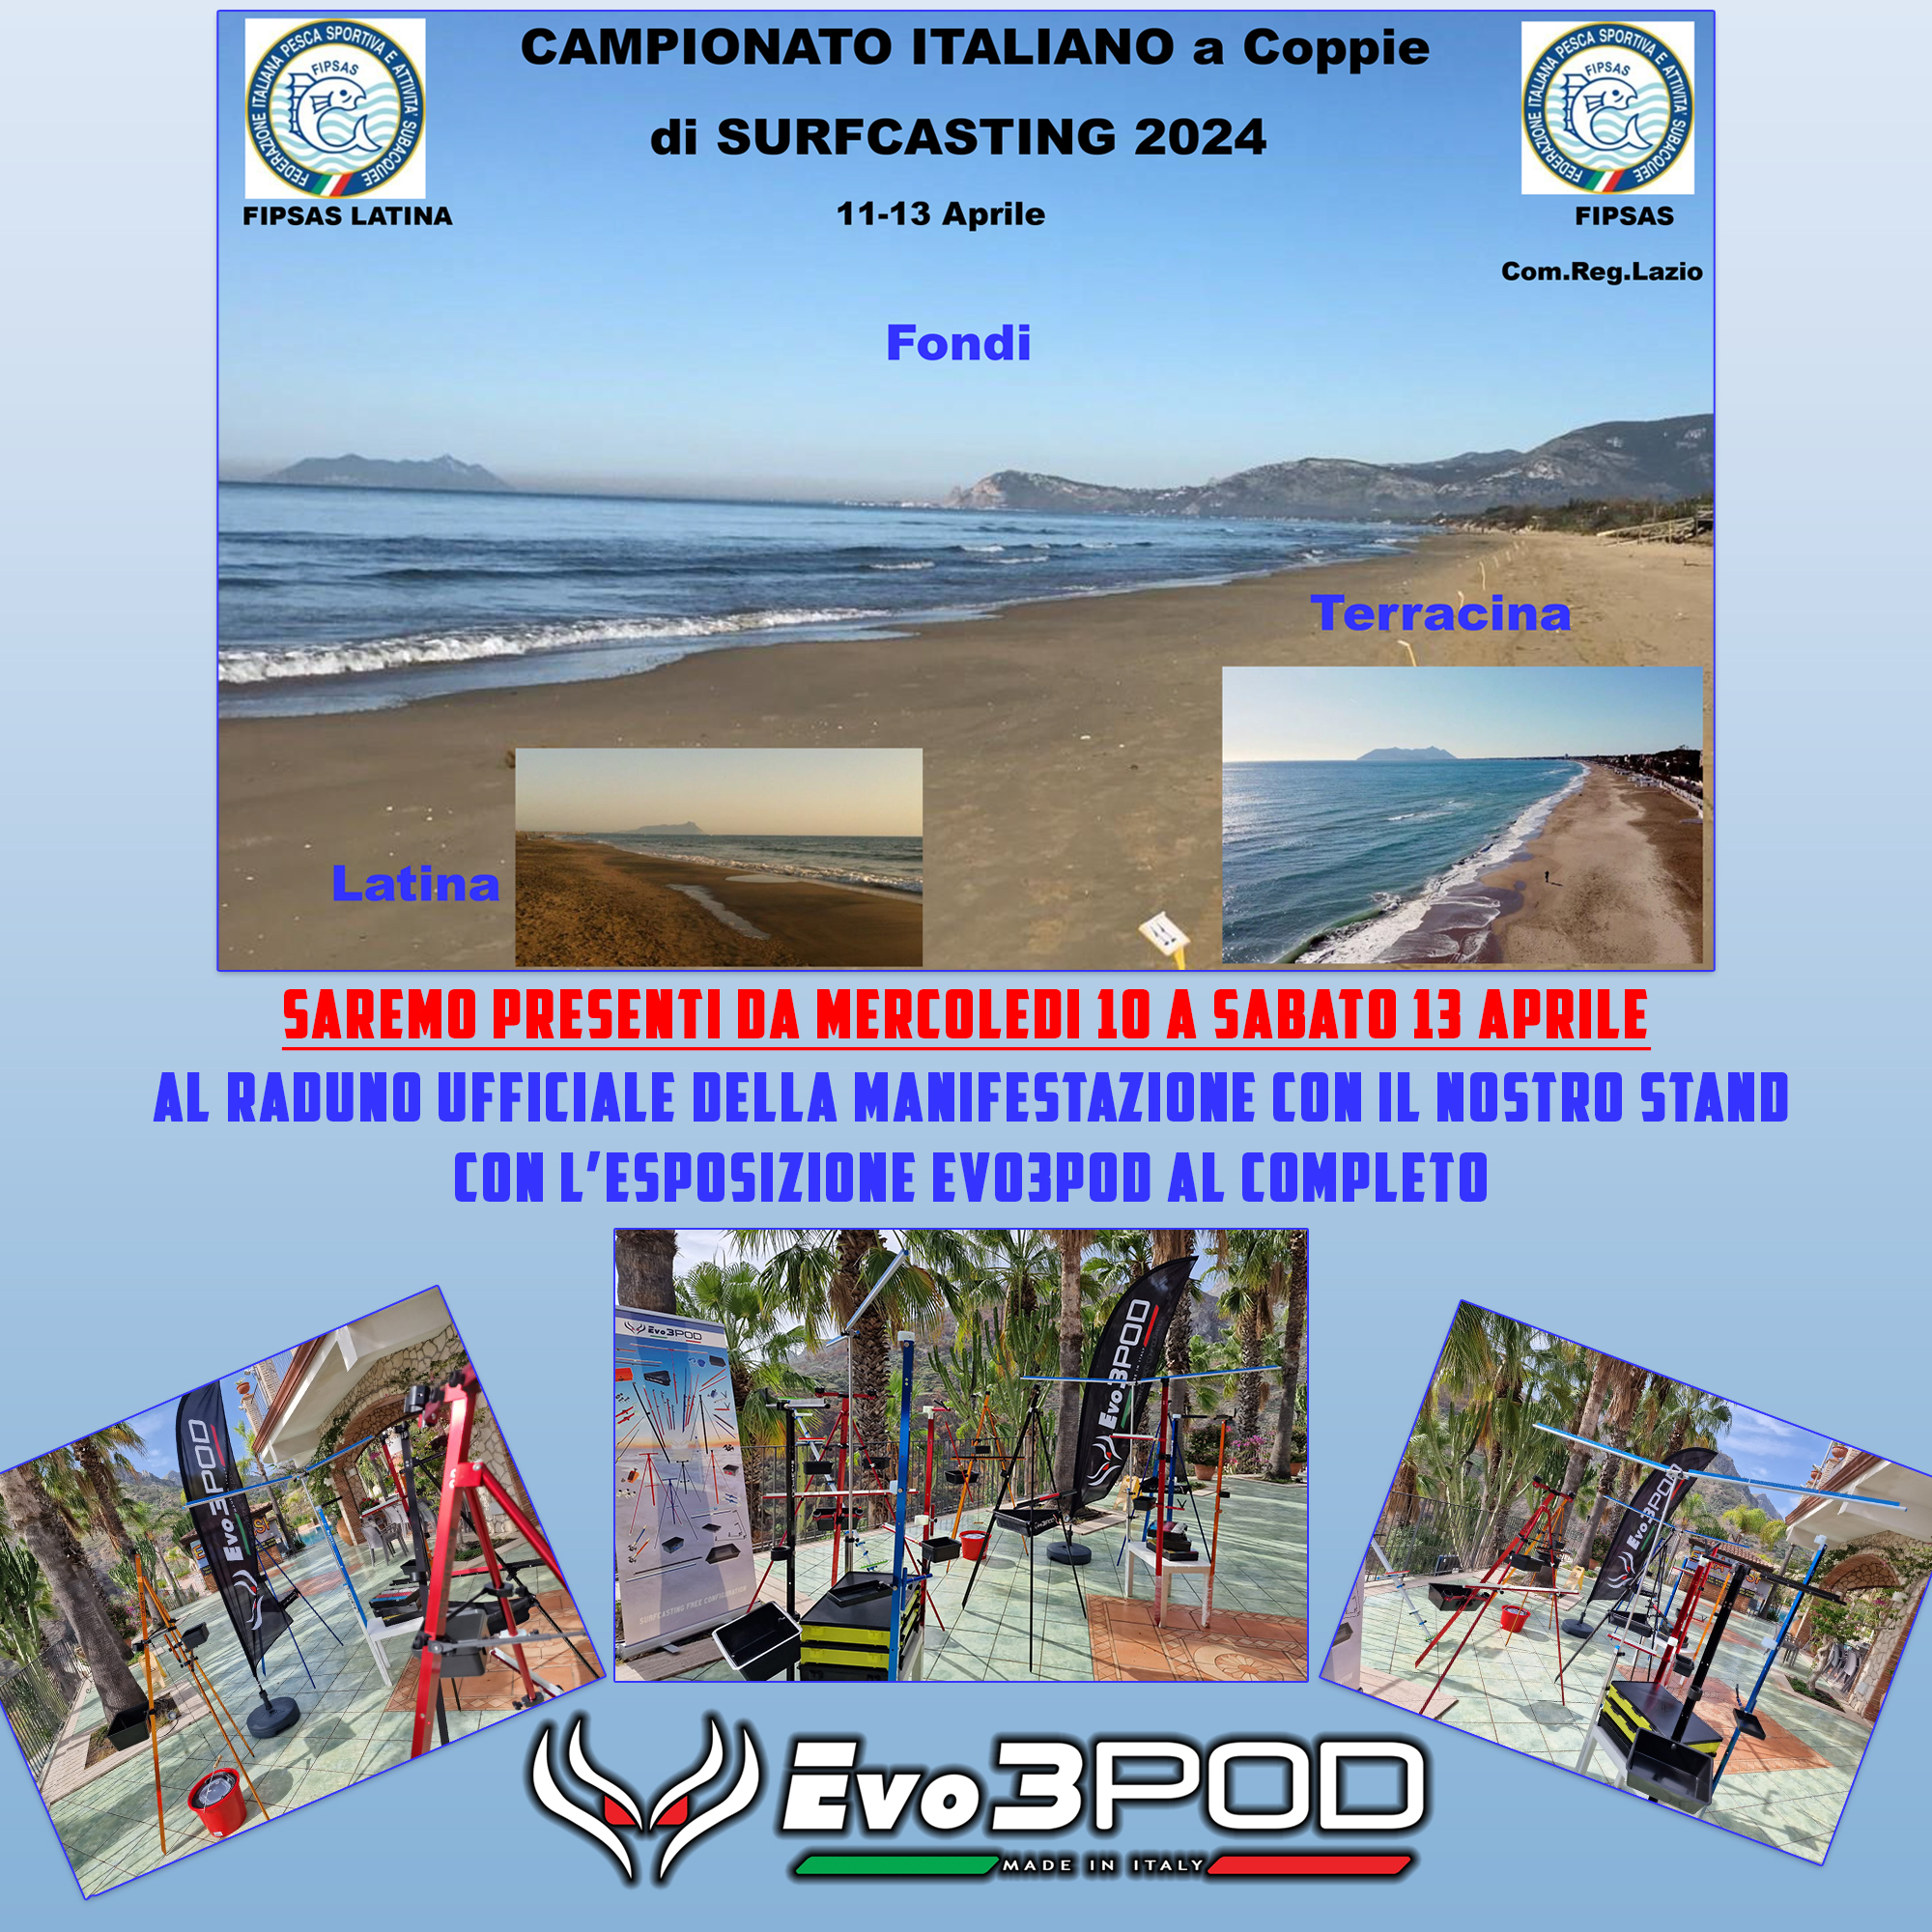 🇮🇹 CAMPIONATO ITALIANO A COPPIE DI SURFCASTING 2024 🇮🇹